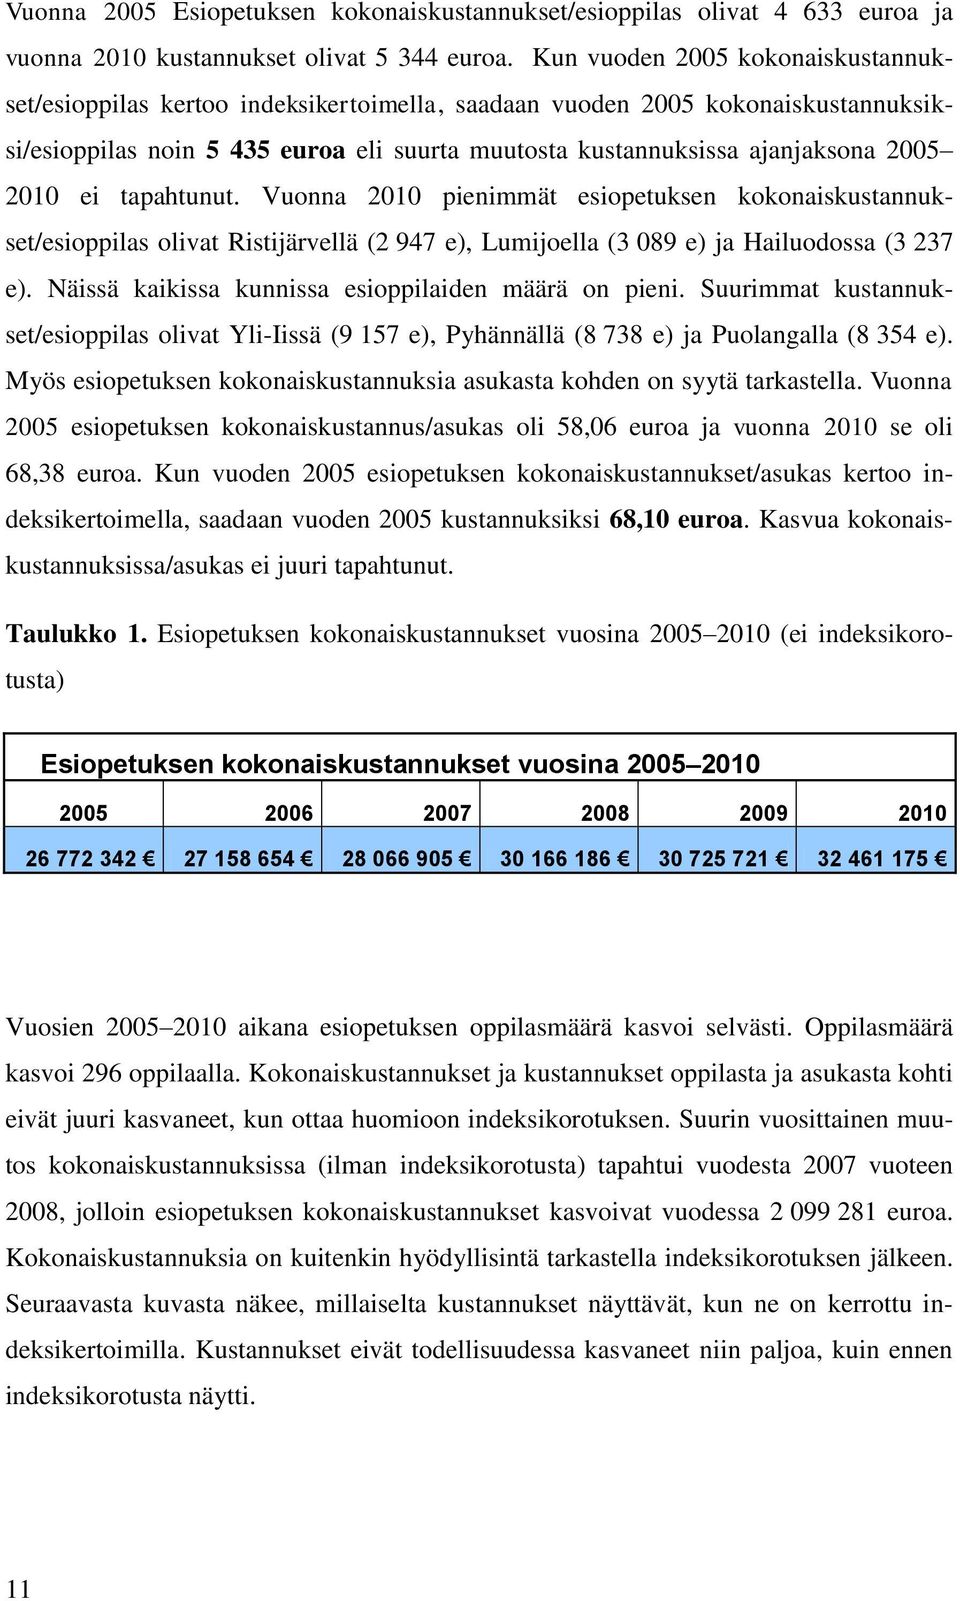 2010 ei tapahtunut. Vuonna 2010 pienimmät esiopetuksen kokonaiskustannukset/esioppilas olivat Ristijärvellä (2 947 e), Lumijoella (3 089 e) ja Hailuodossa (3 237 e).